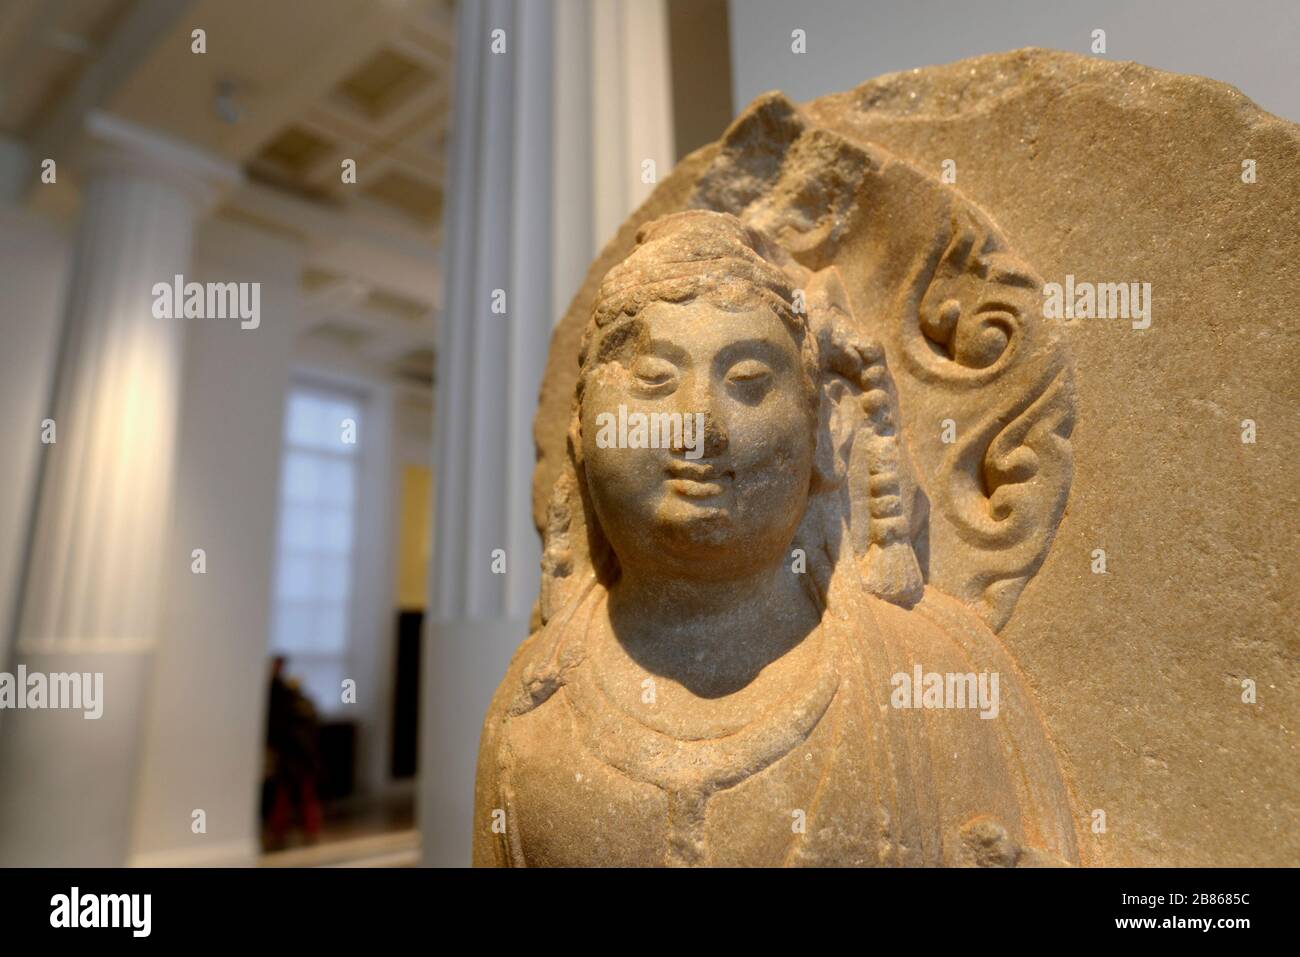 British Museum, Bloomsbury, Londra, Inghilterra, Regno Unito. Testa in pietra di Bodhidattva Manjushri - esempio buddista di saggezza. 1100-1200AD, Baoding, Hebei. Foto Stock